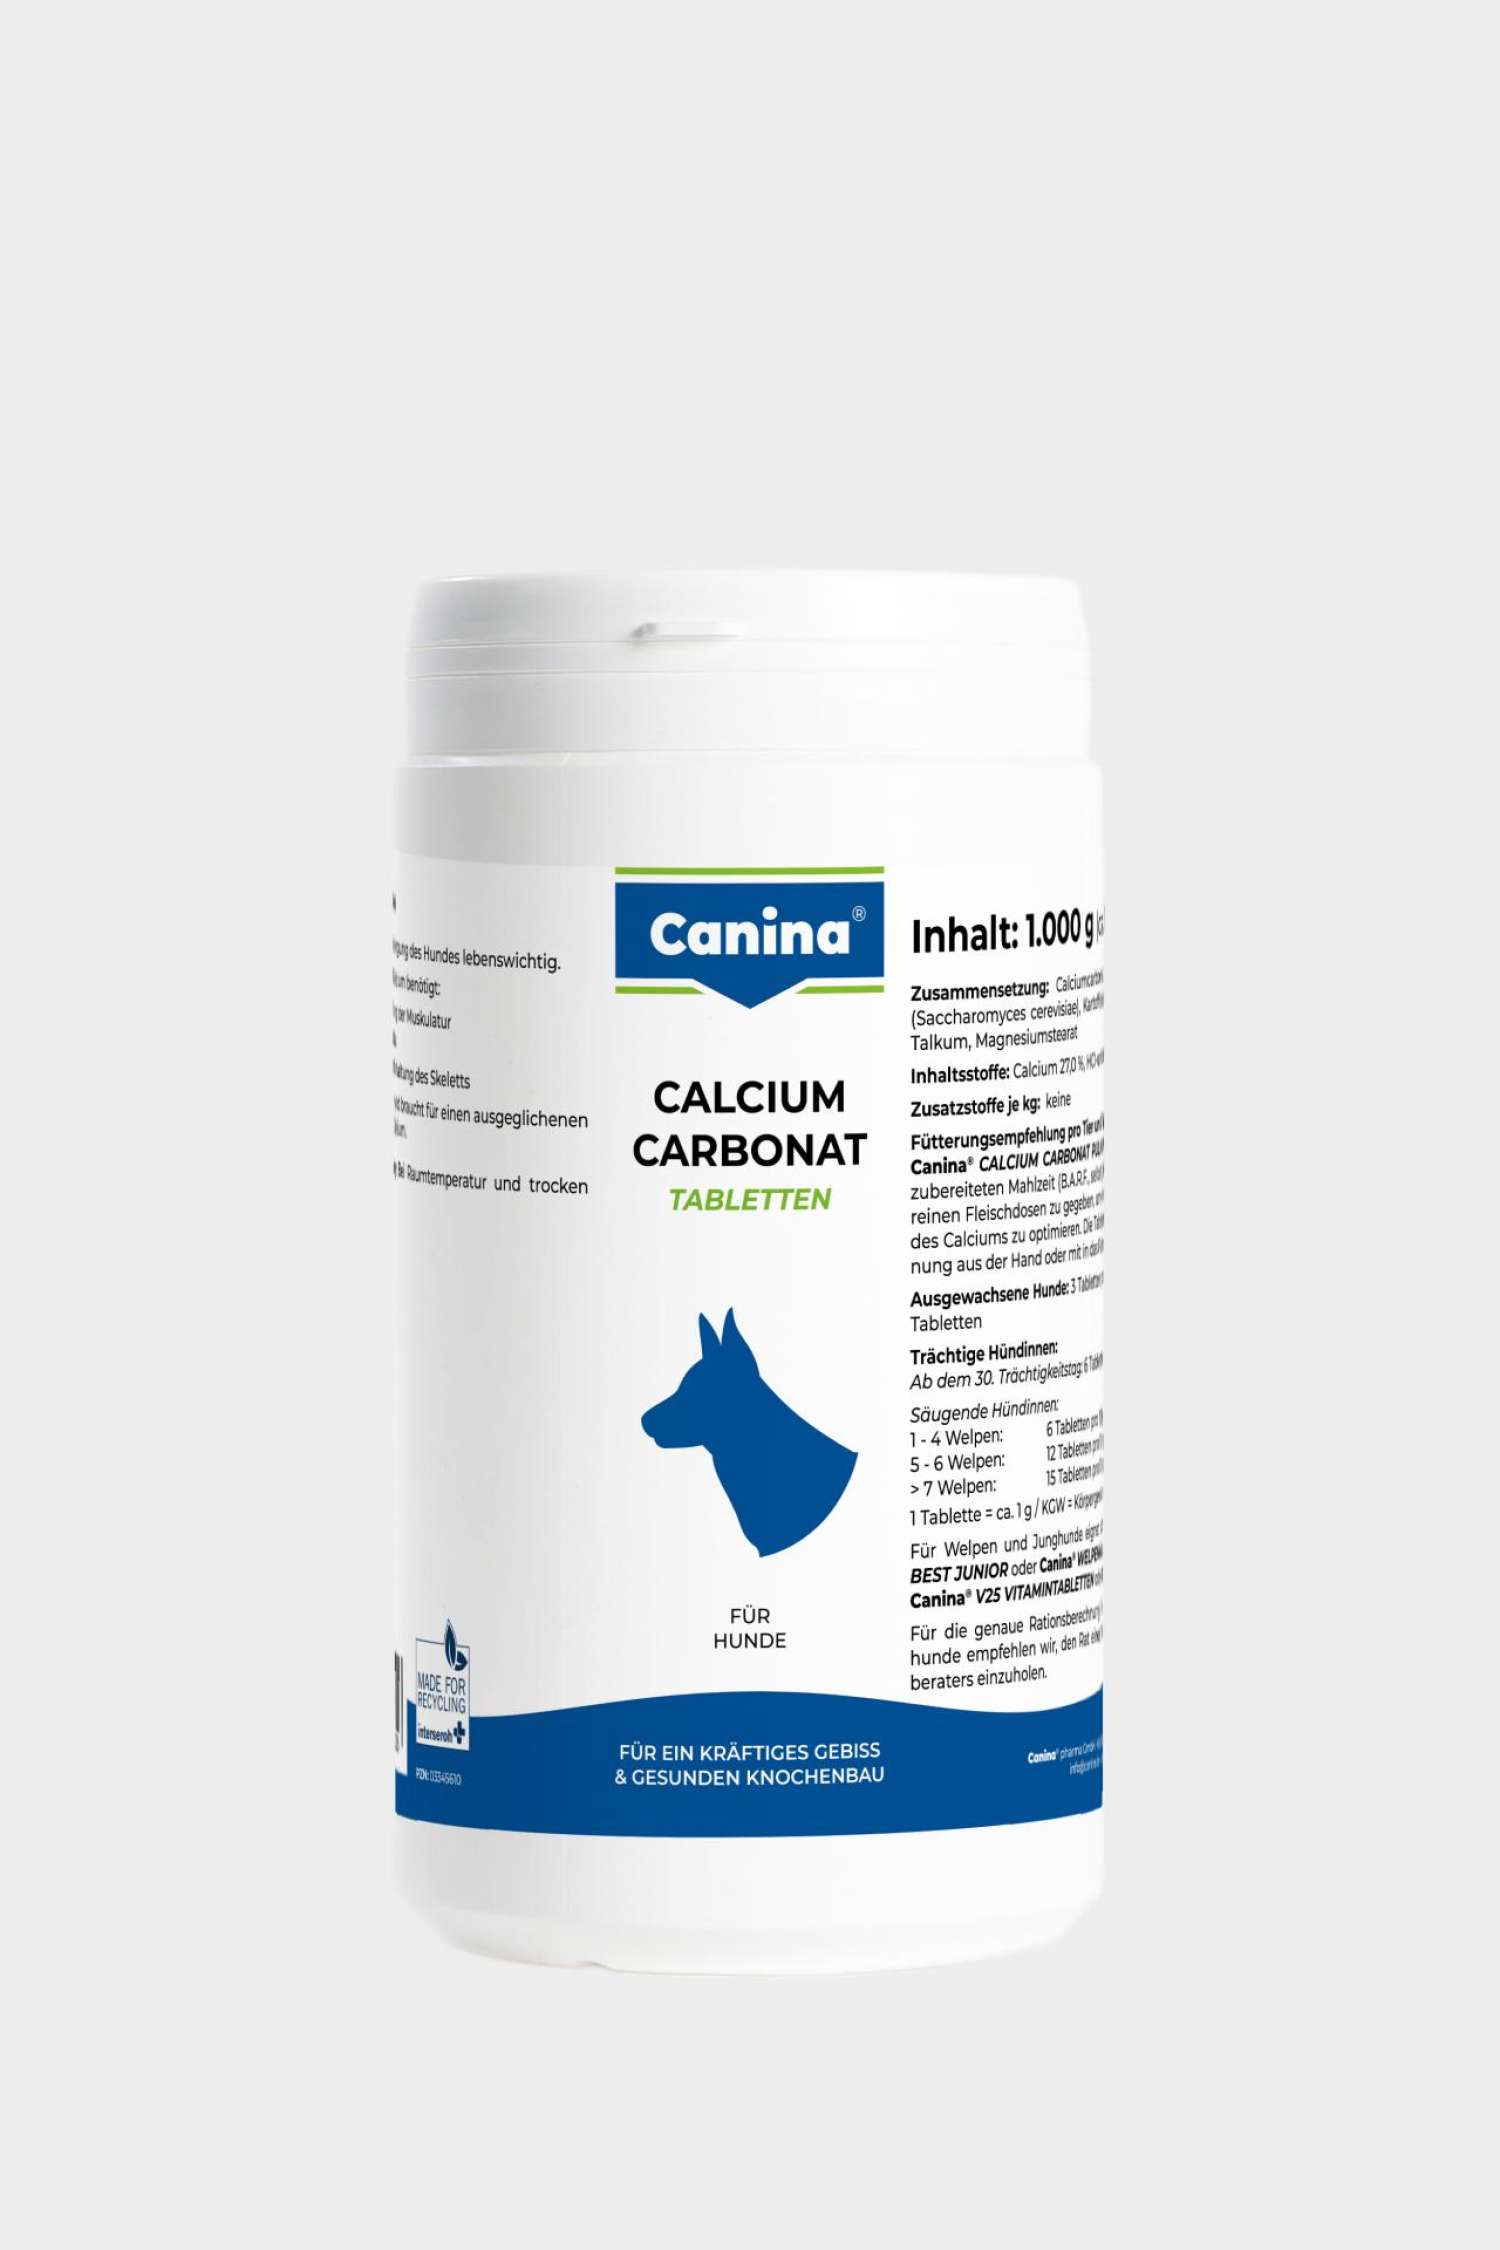 Calcium carbonate tablets